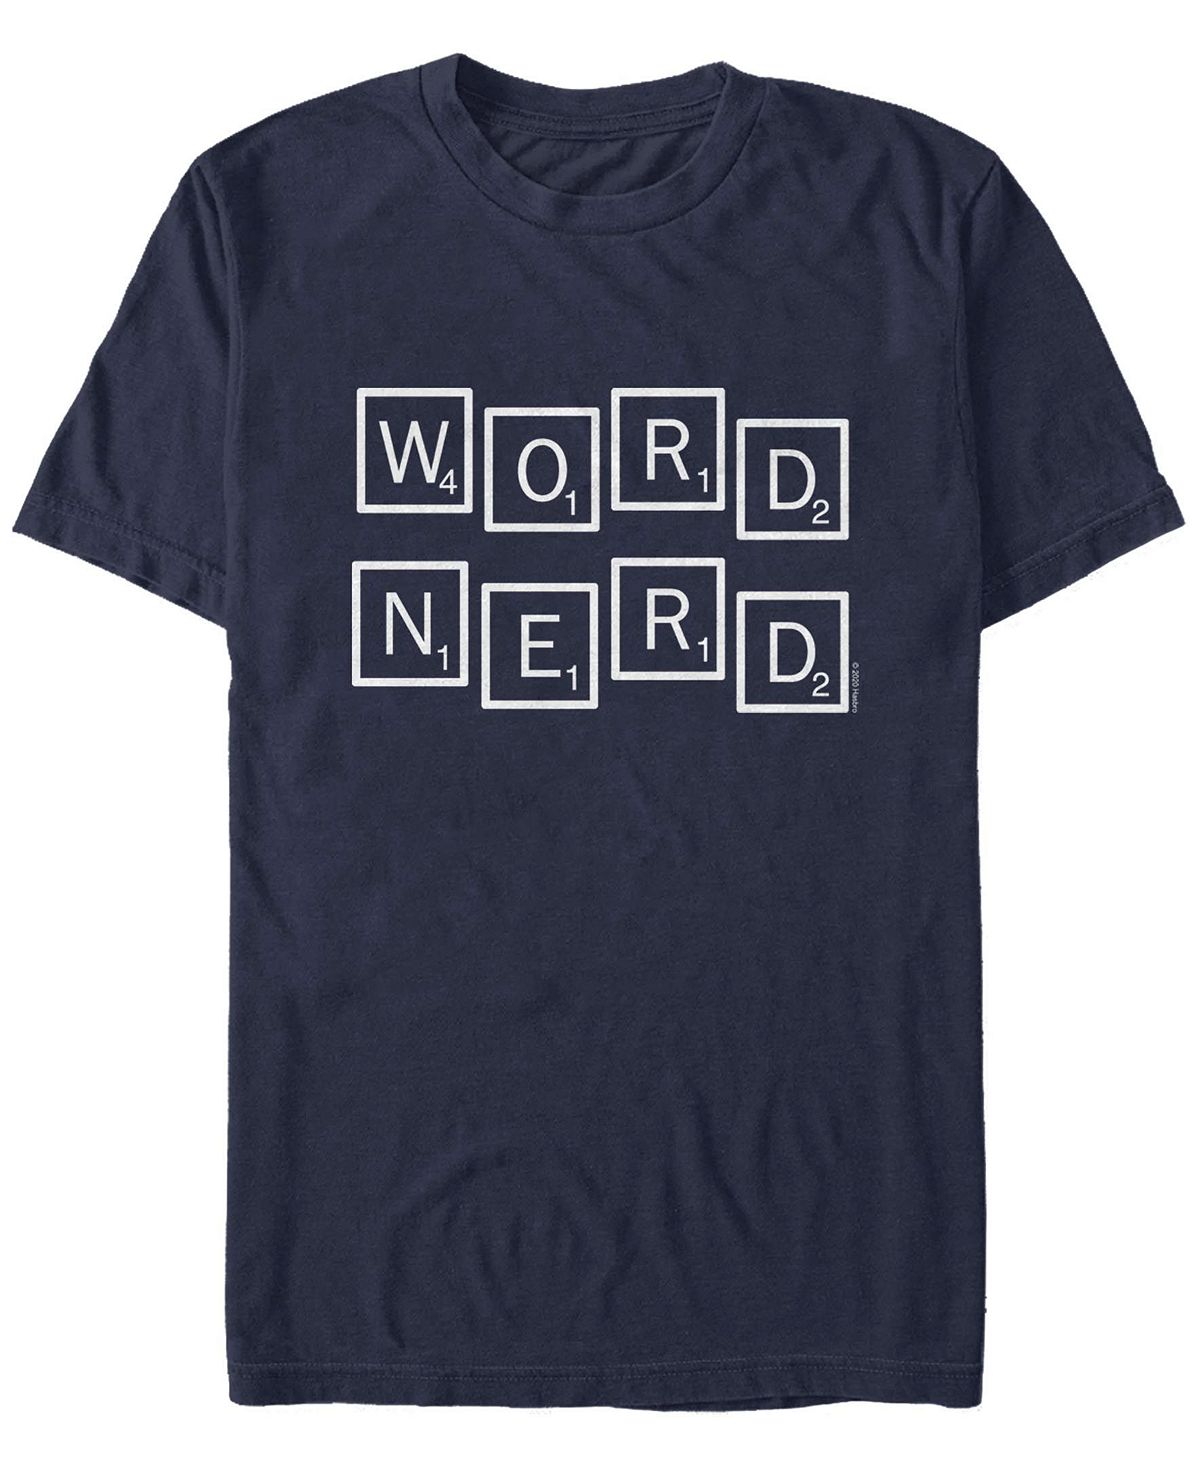 Мужская футболка word nerd с круглым вырезом и короткими рукавами Fifth Sun, синий scrabble dictionary